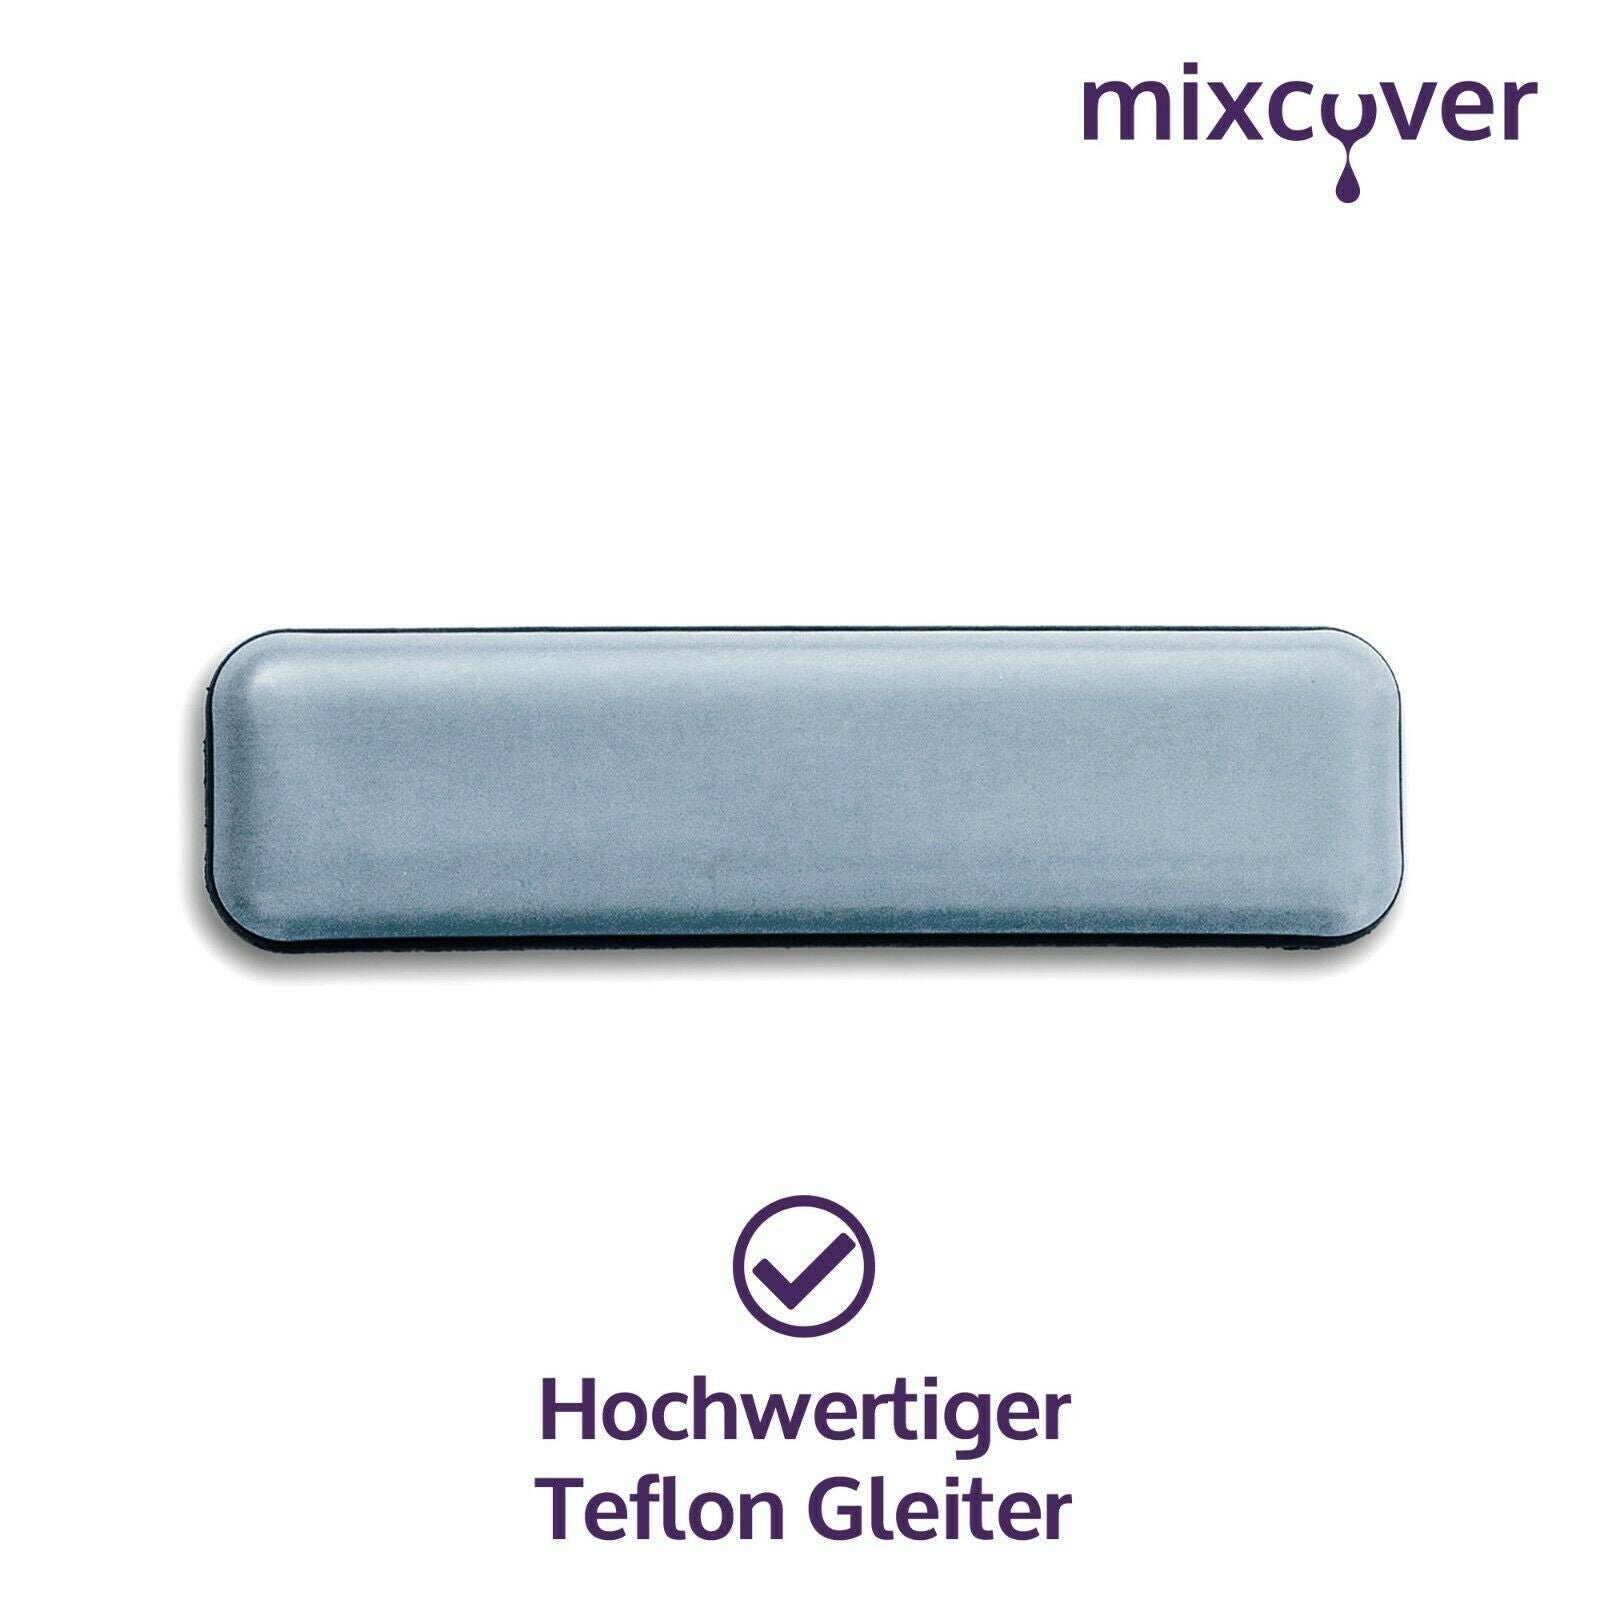 mixcover den TM5 Gleiter/Slider für unsichtbare Set Küchenmaschinen-Adapter TM6 Mixcover & Thermomix 1er